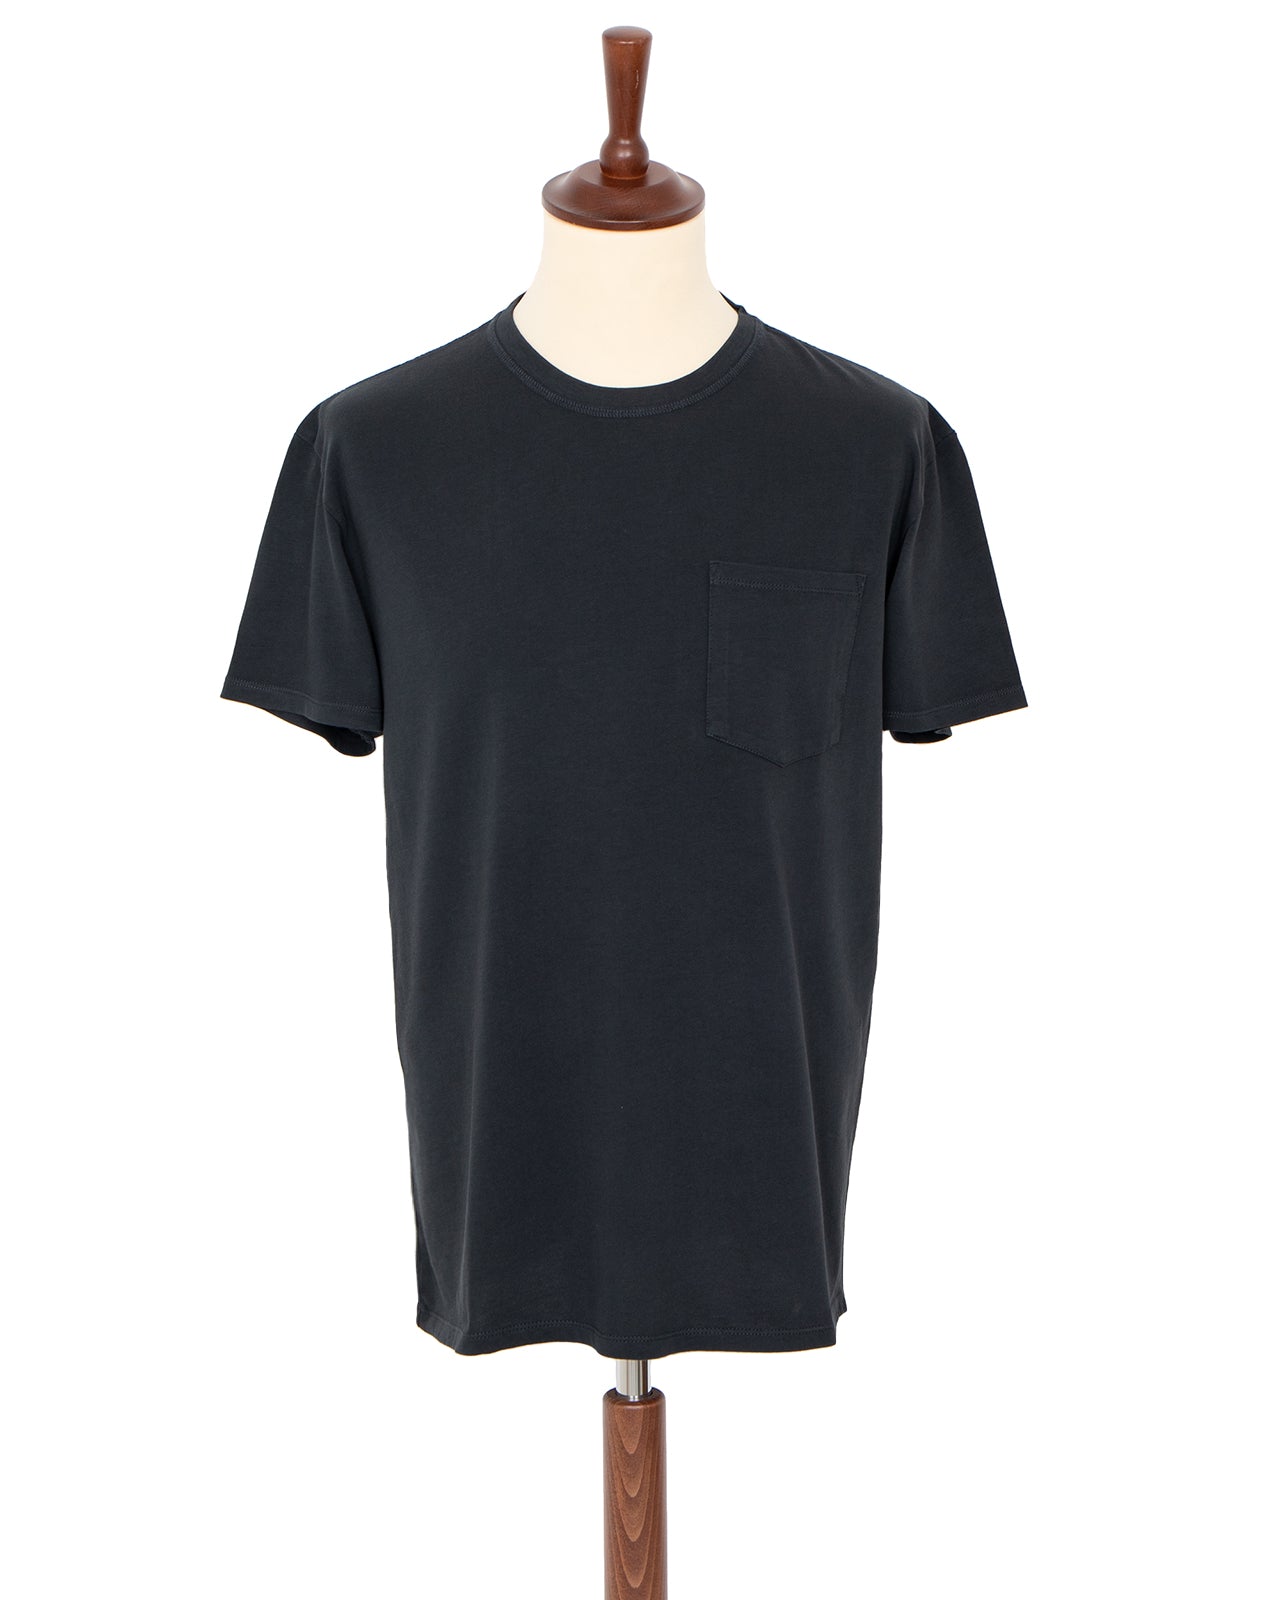 Indigofera Wilson T-Shirt, Marshall Black